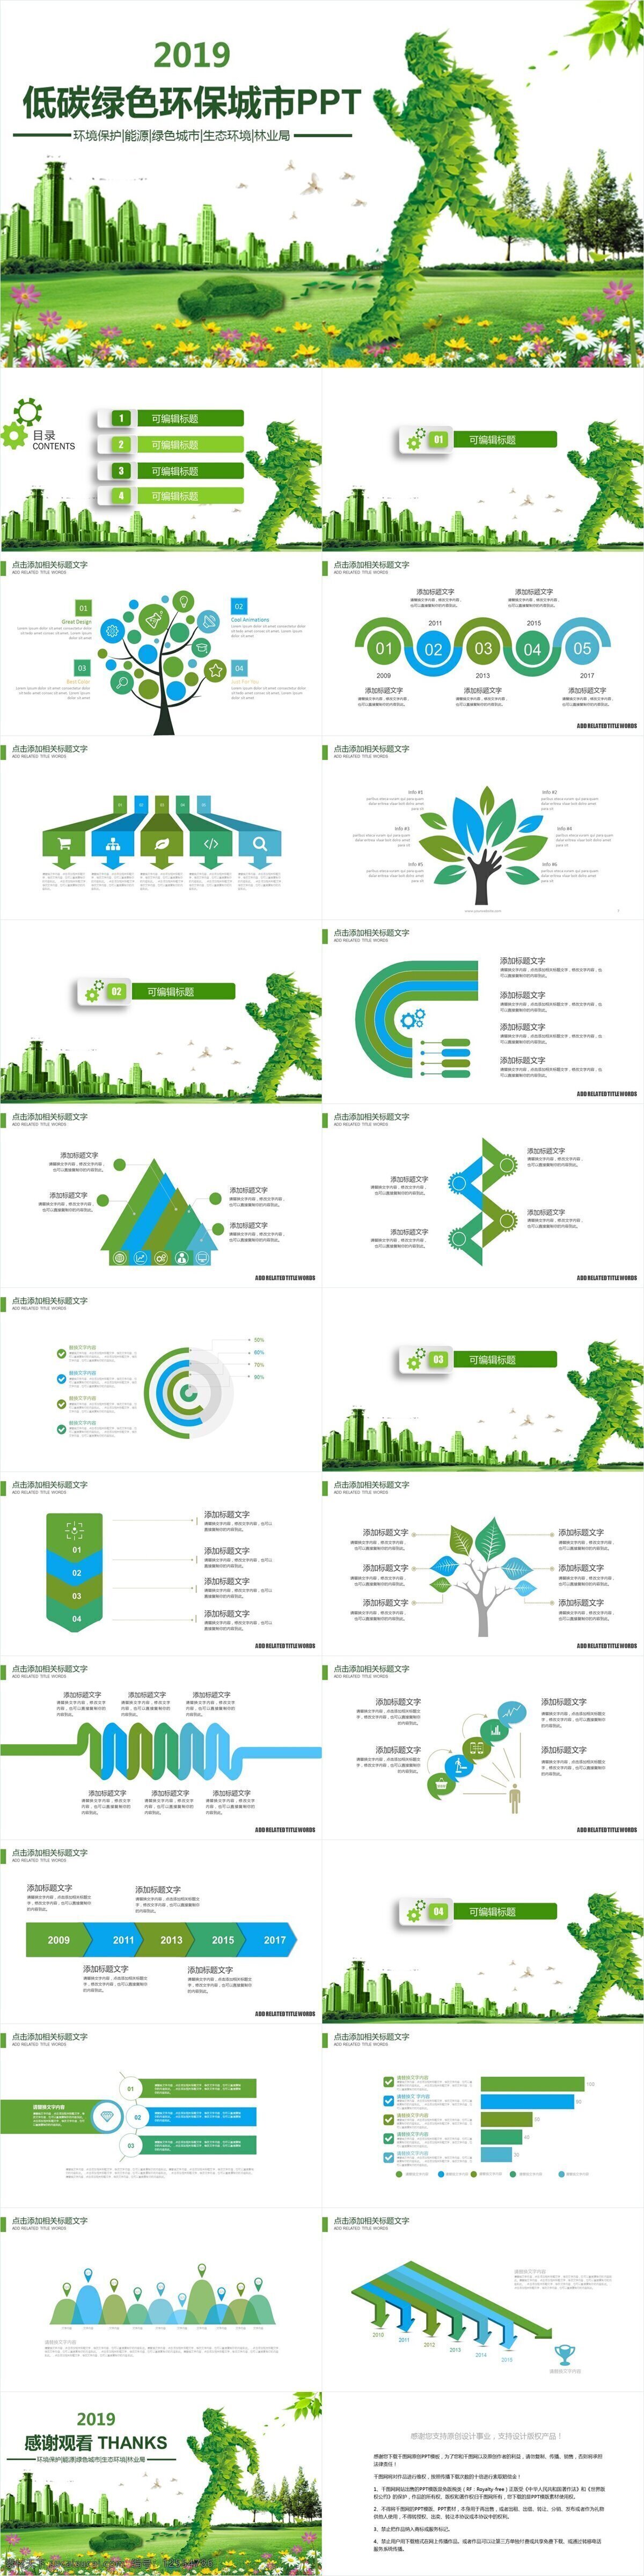 创意 无 规则 图形 低 碳 绿色环保 宣传 模板 绿色 环保 ppt模板 无规则 低碳